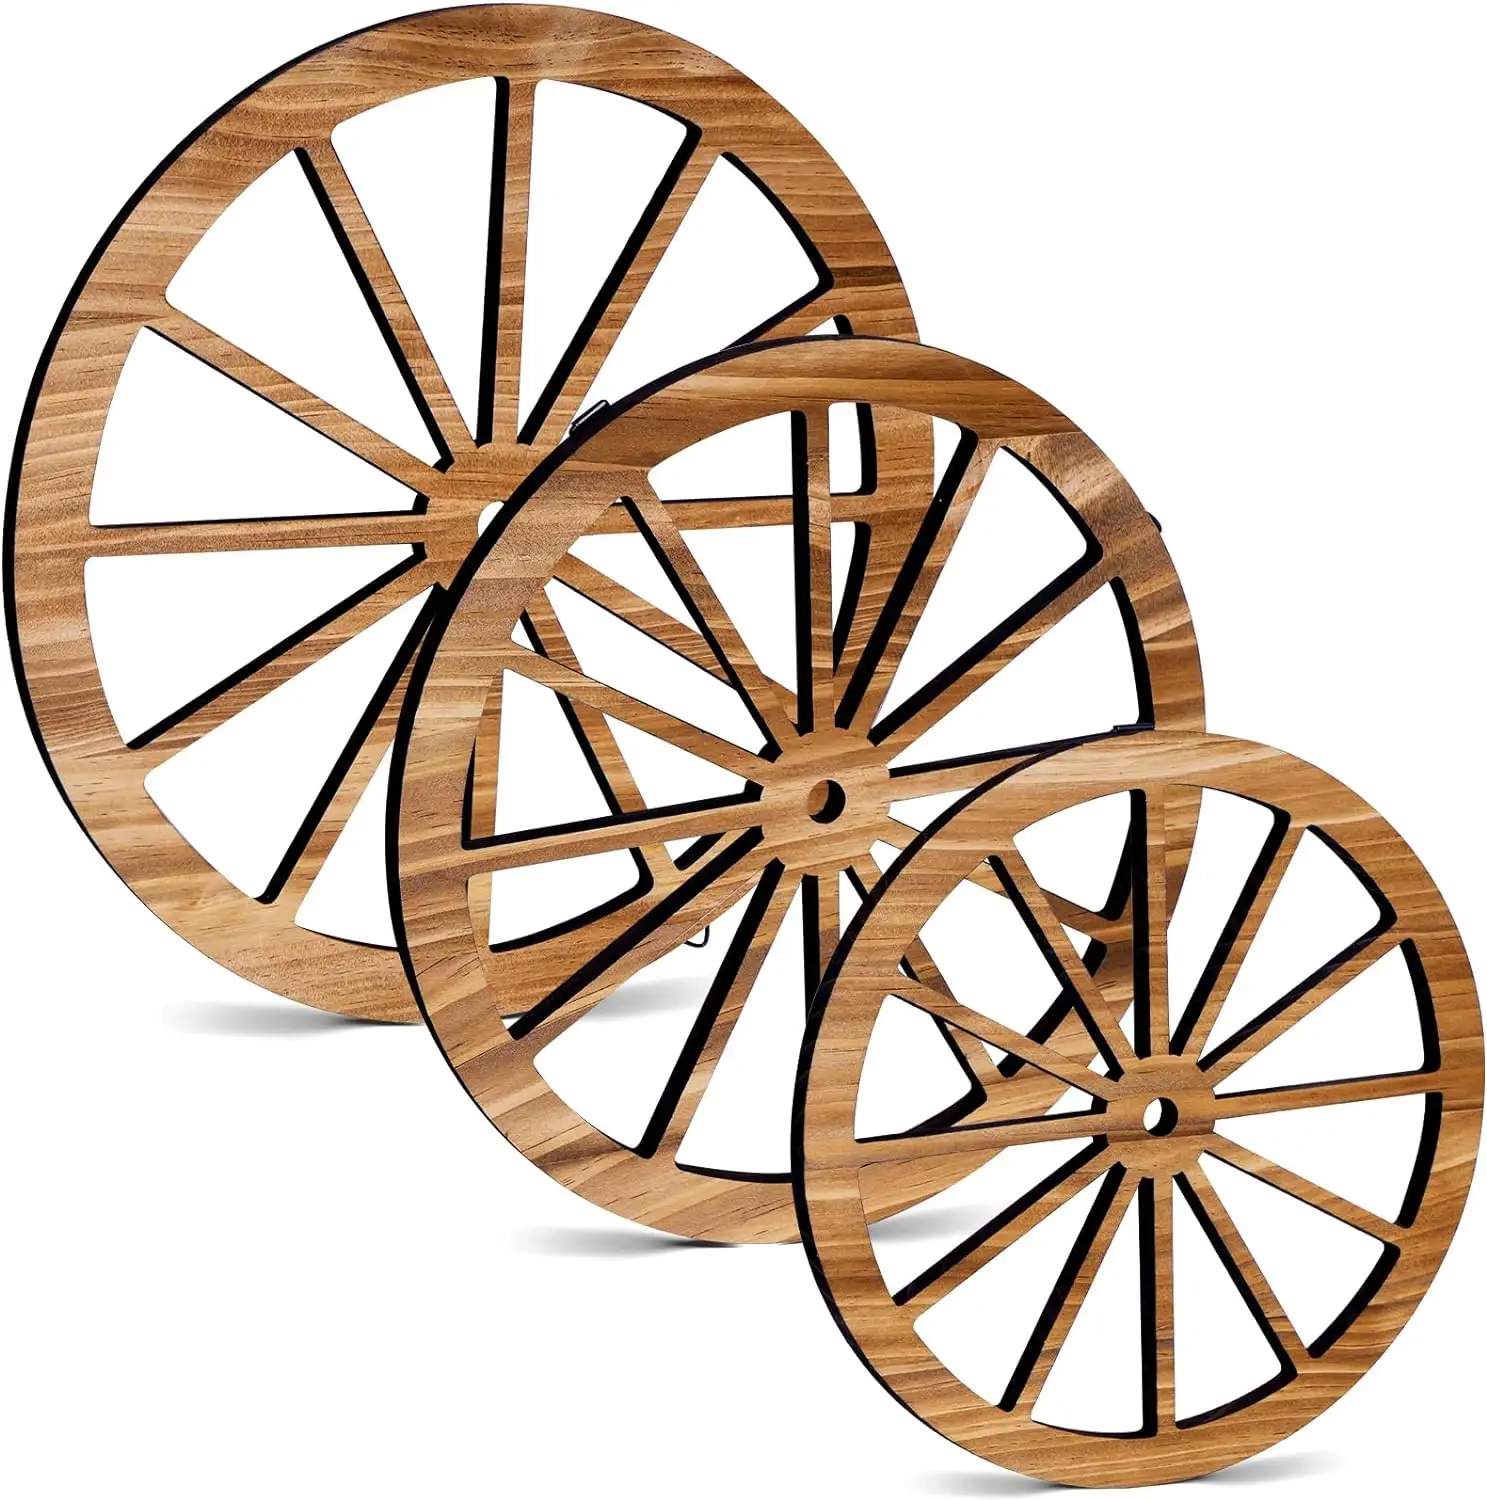 3 قطع عجلة عربة خشبية ديكور قديم غربي كلاسيكي فن معلق ديكور حائط غرب بري عجلة